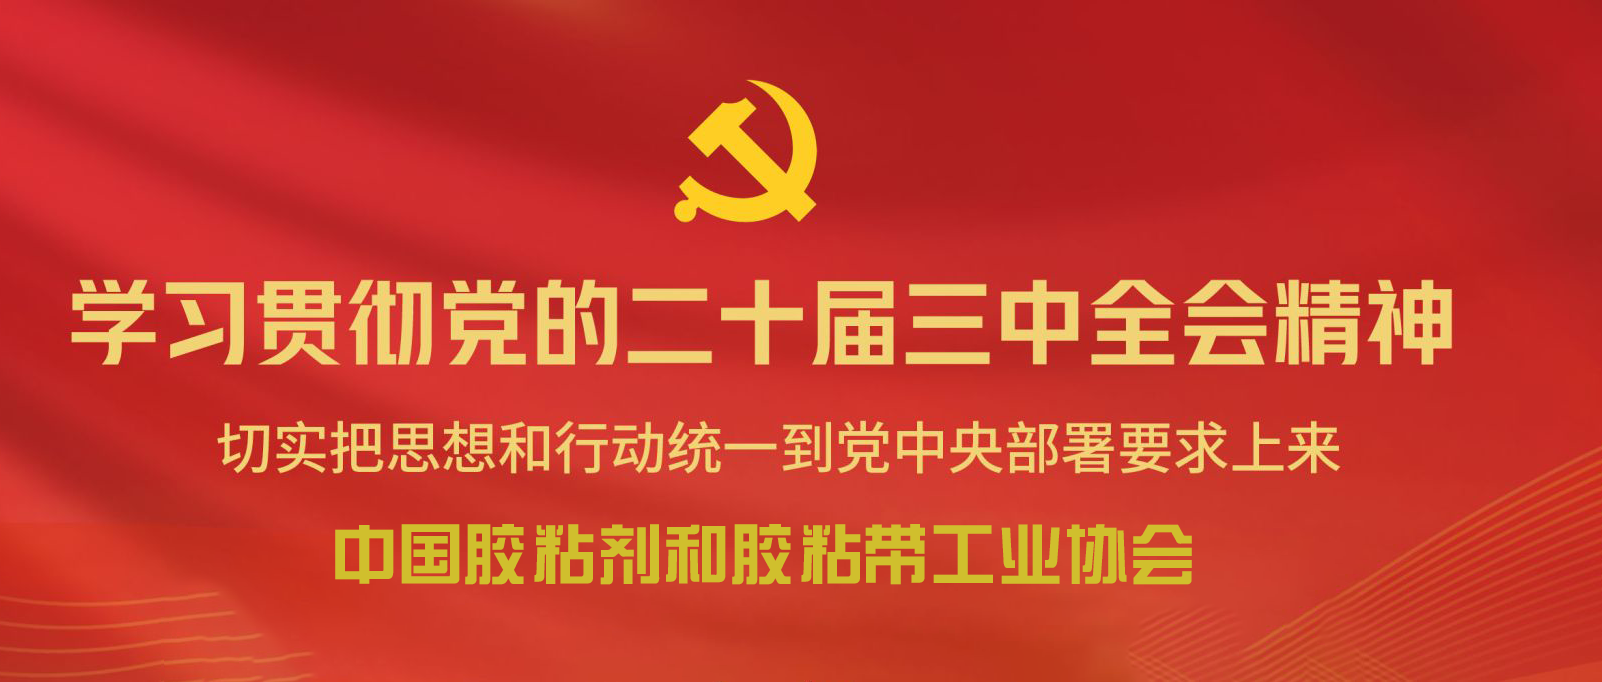 中国胶粘剂和胶粘带工业协会传达学习贯彻党的二十届三中全会精神的情况简报